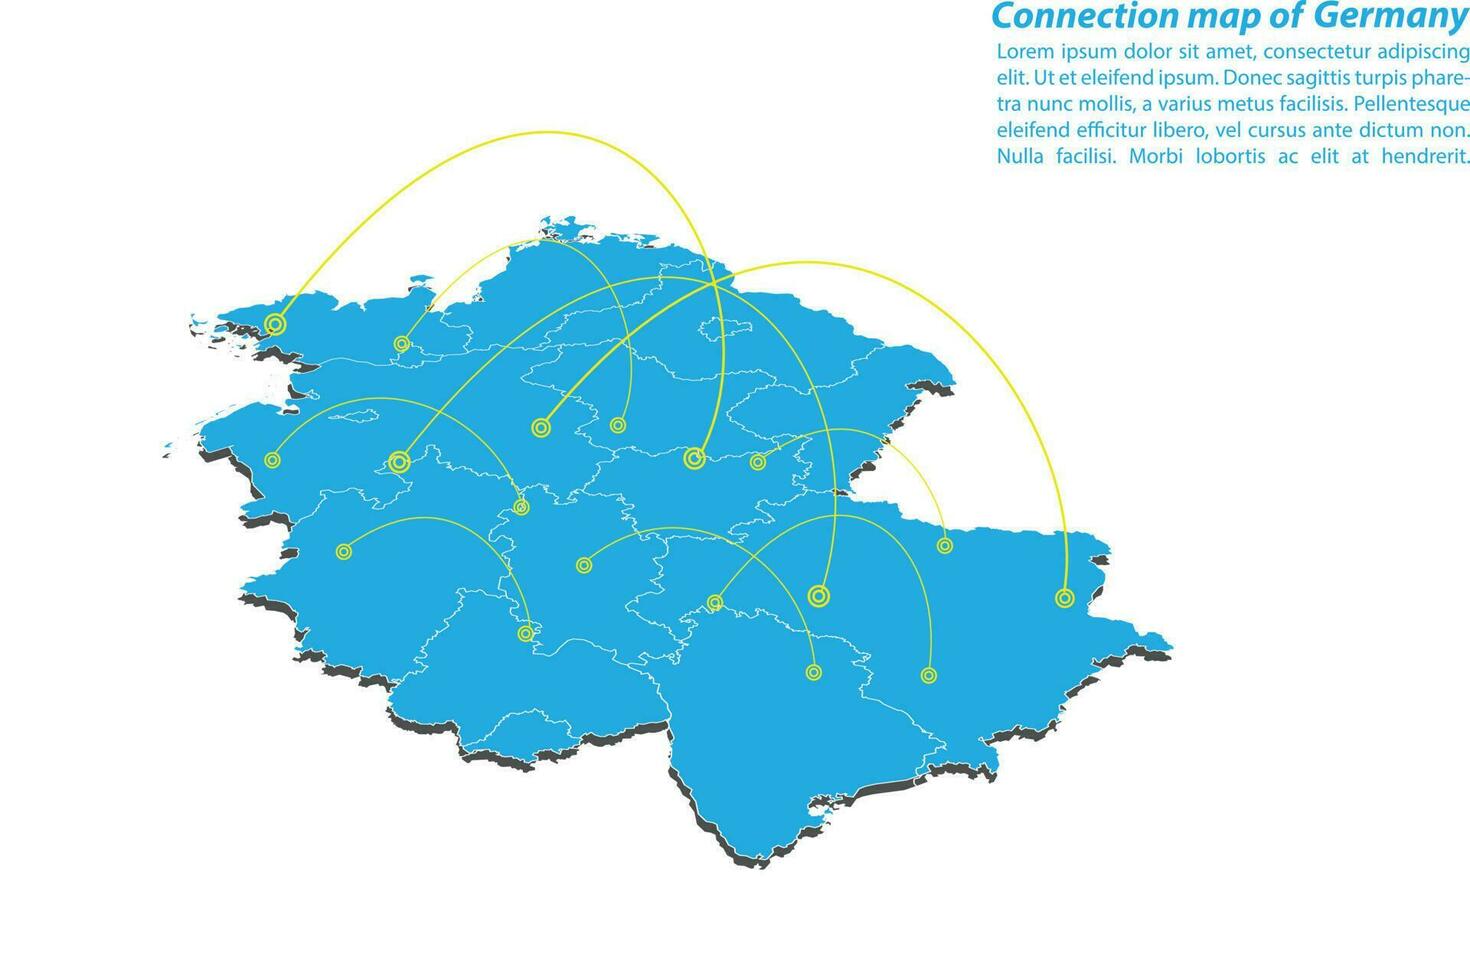 modernes deutschland kartenverbindungen netzwerkdesign, bestes internetkonzept des deutschlandkartengeschäfts aus konzeptserien, kartenpunkt- und linienzusammensetzung. Infografik-Karte. Vektor-Illustration. vektor